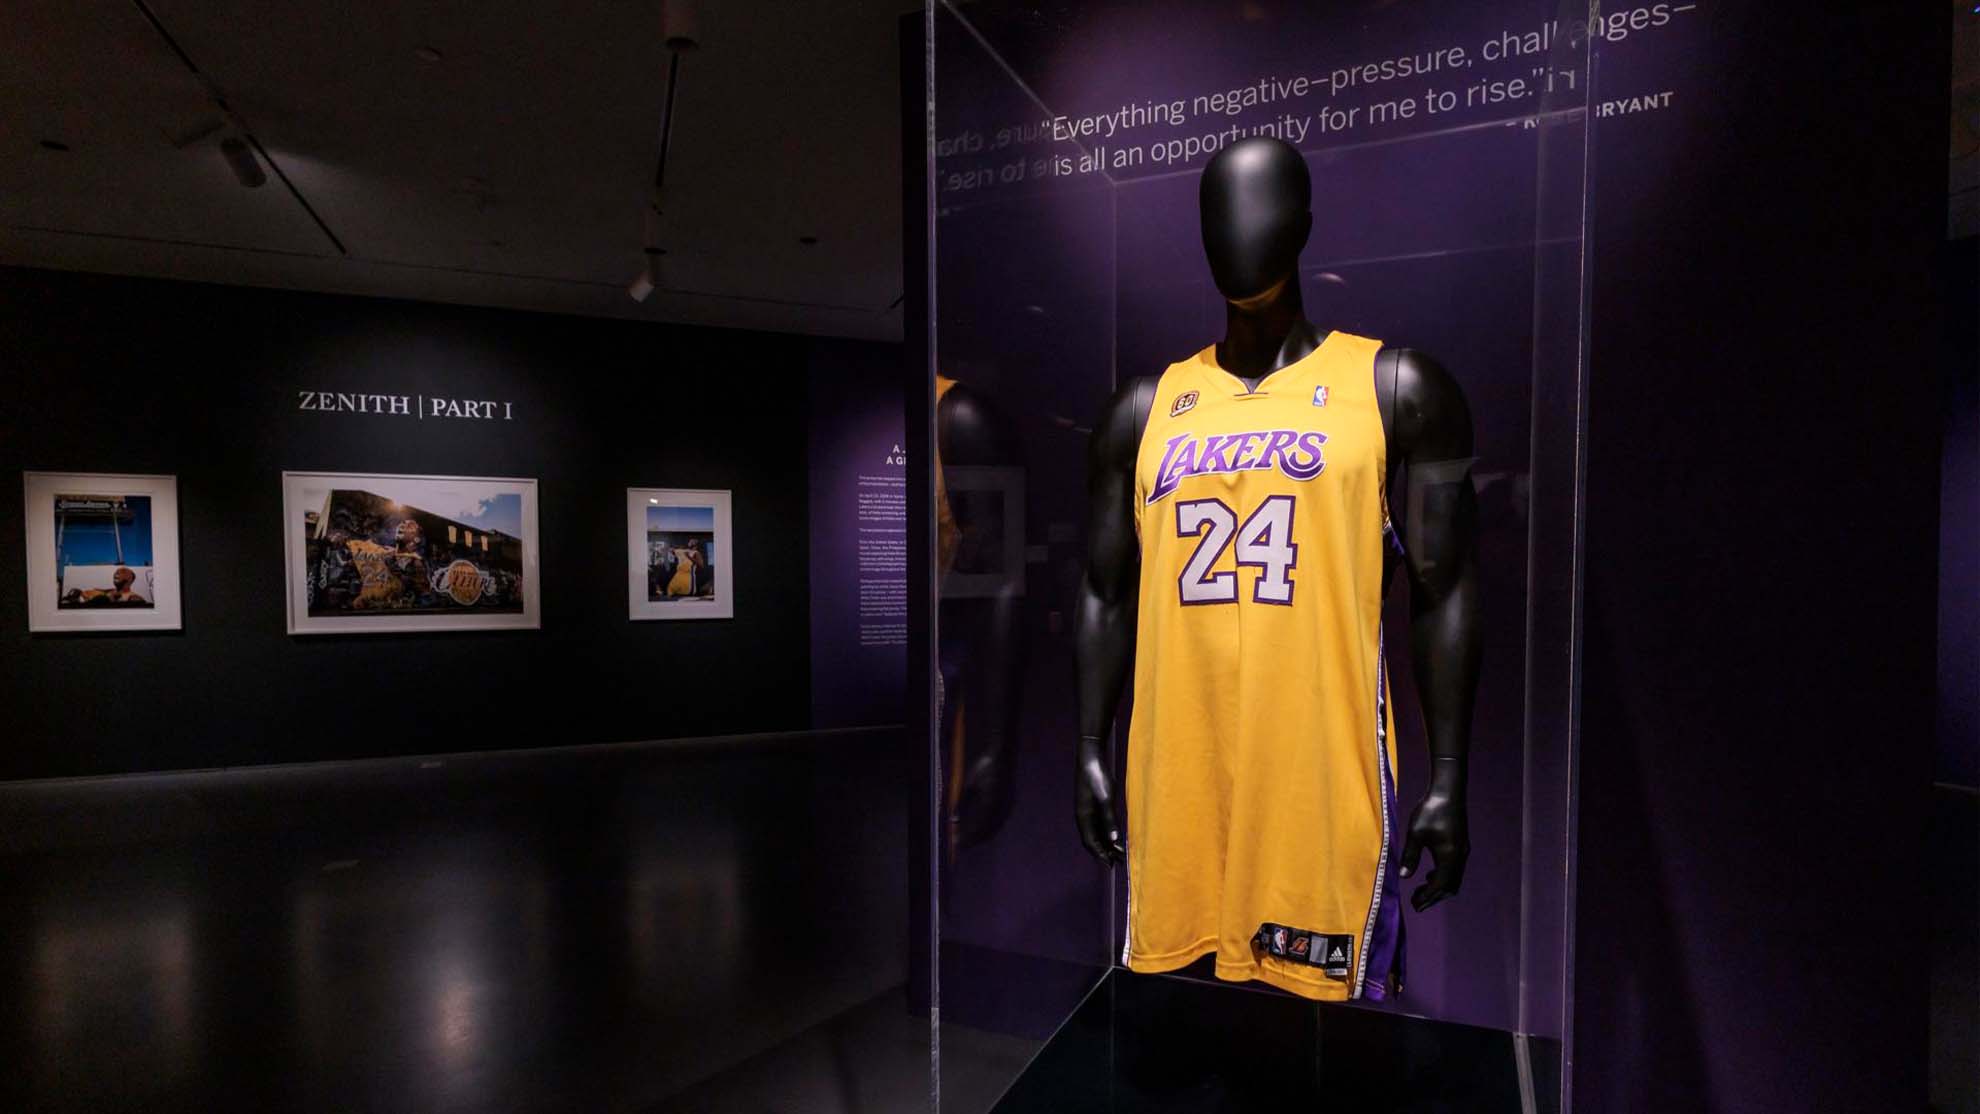 Millonaria subasta: venden camiseta de Kobe Bryant de cuando jugaba para Los Angeles Lakers - Telemundo 52